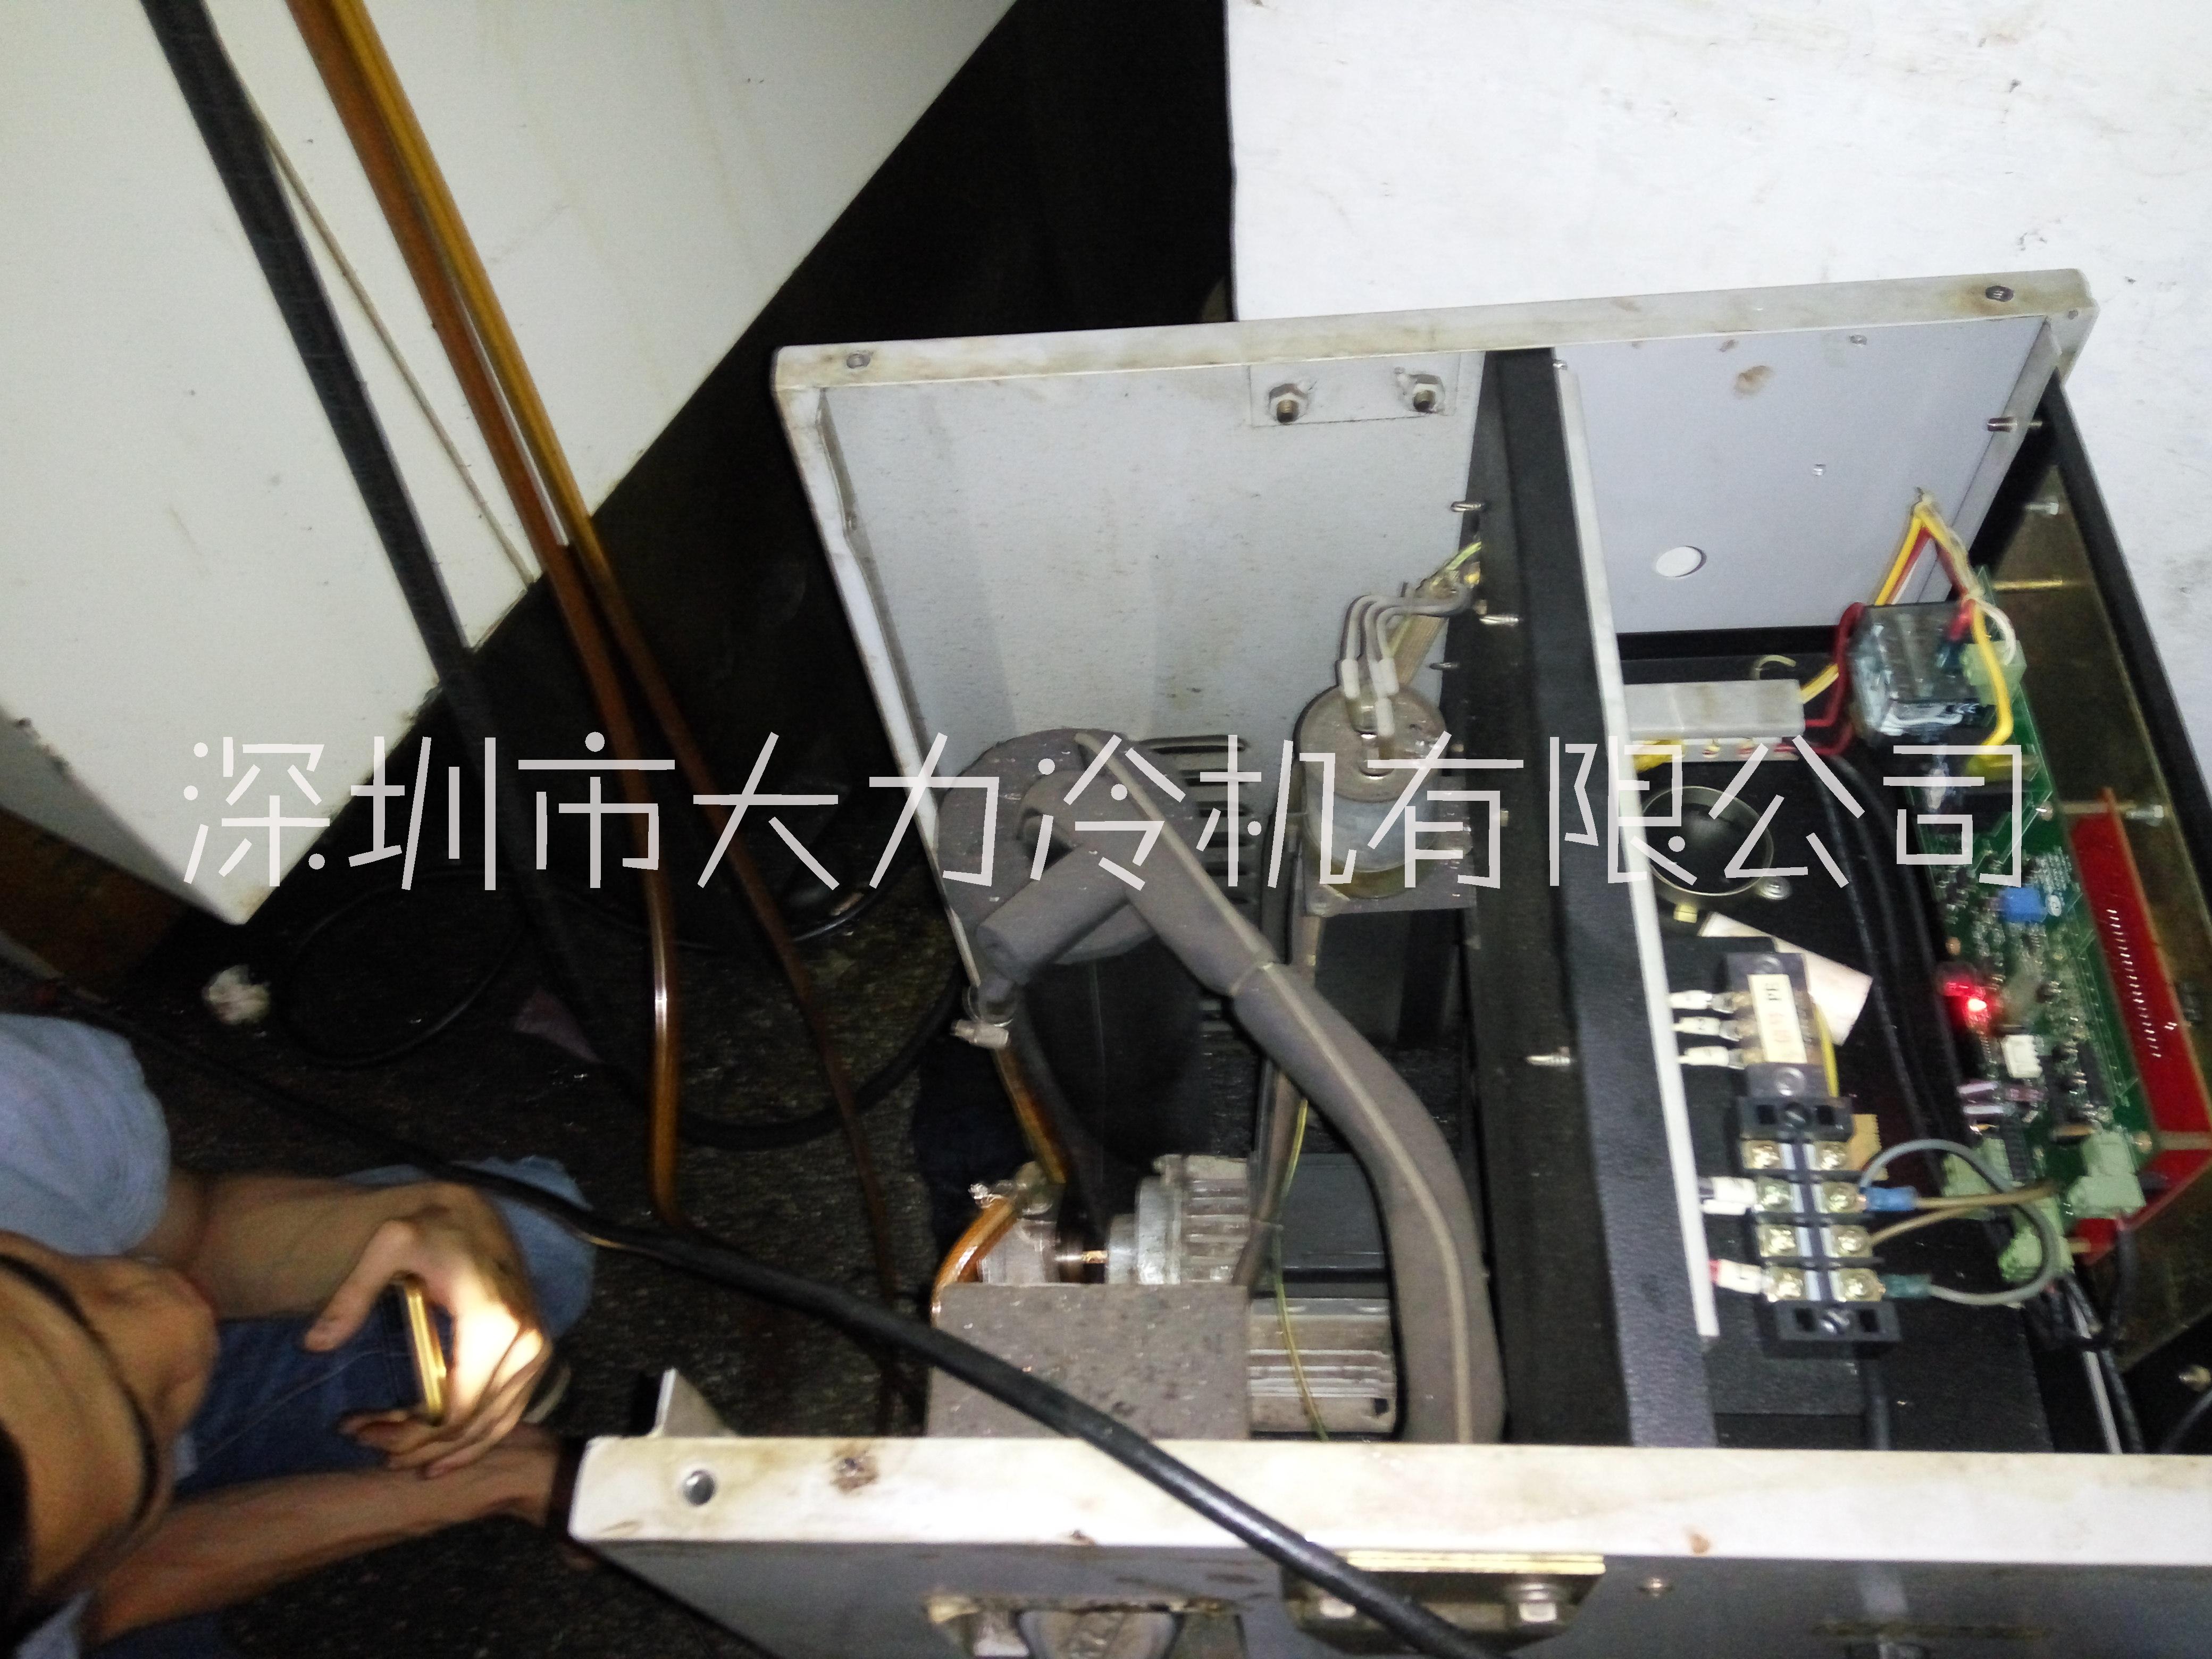 大力冷机客户,深圳市鑫达超模具有限公司精雕机油冷机维修现场20190430